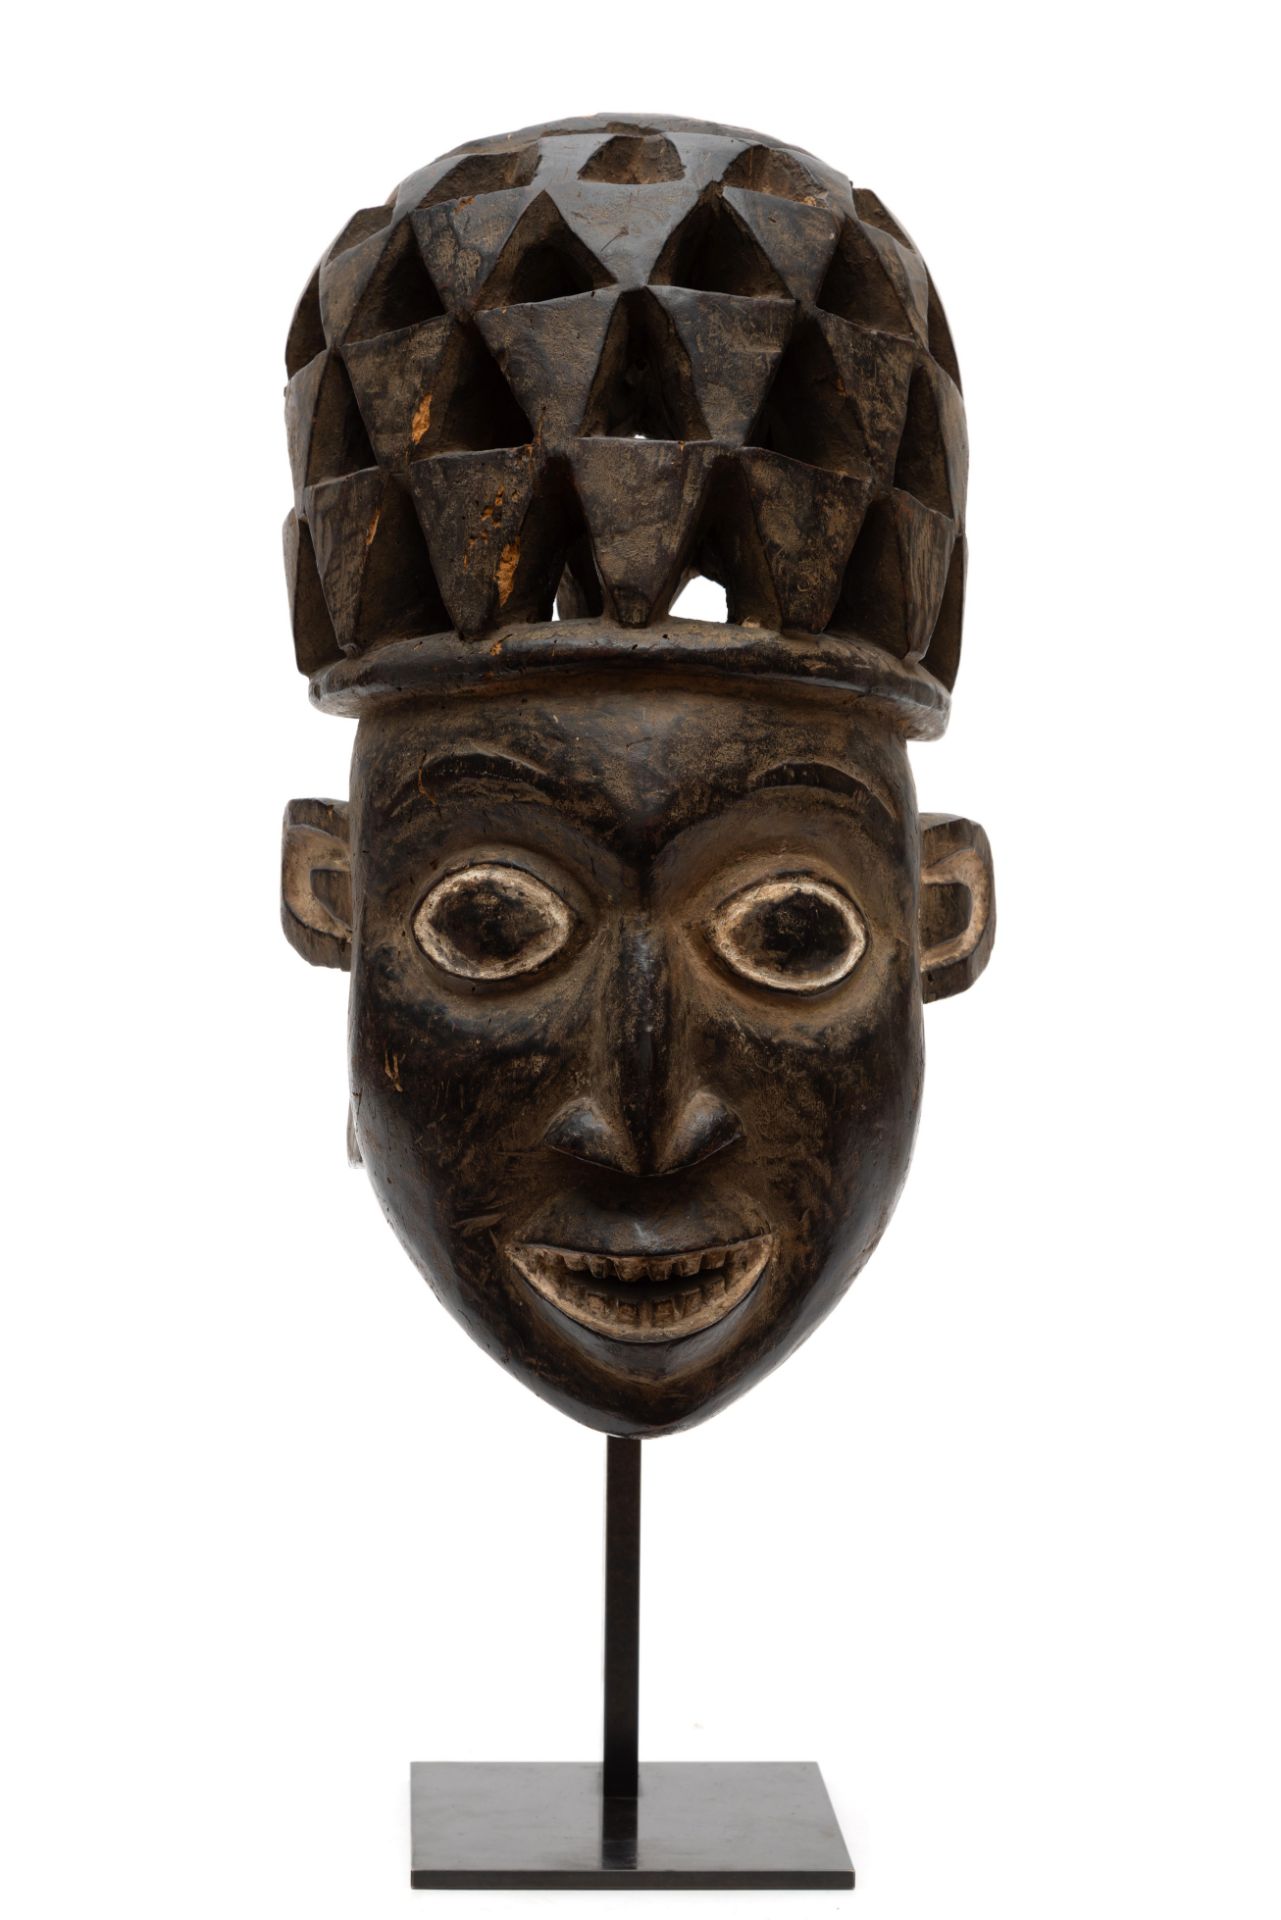 Cameroon, Grasslands, Bamileke, helmet mask, - Image 4 of 8